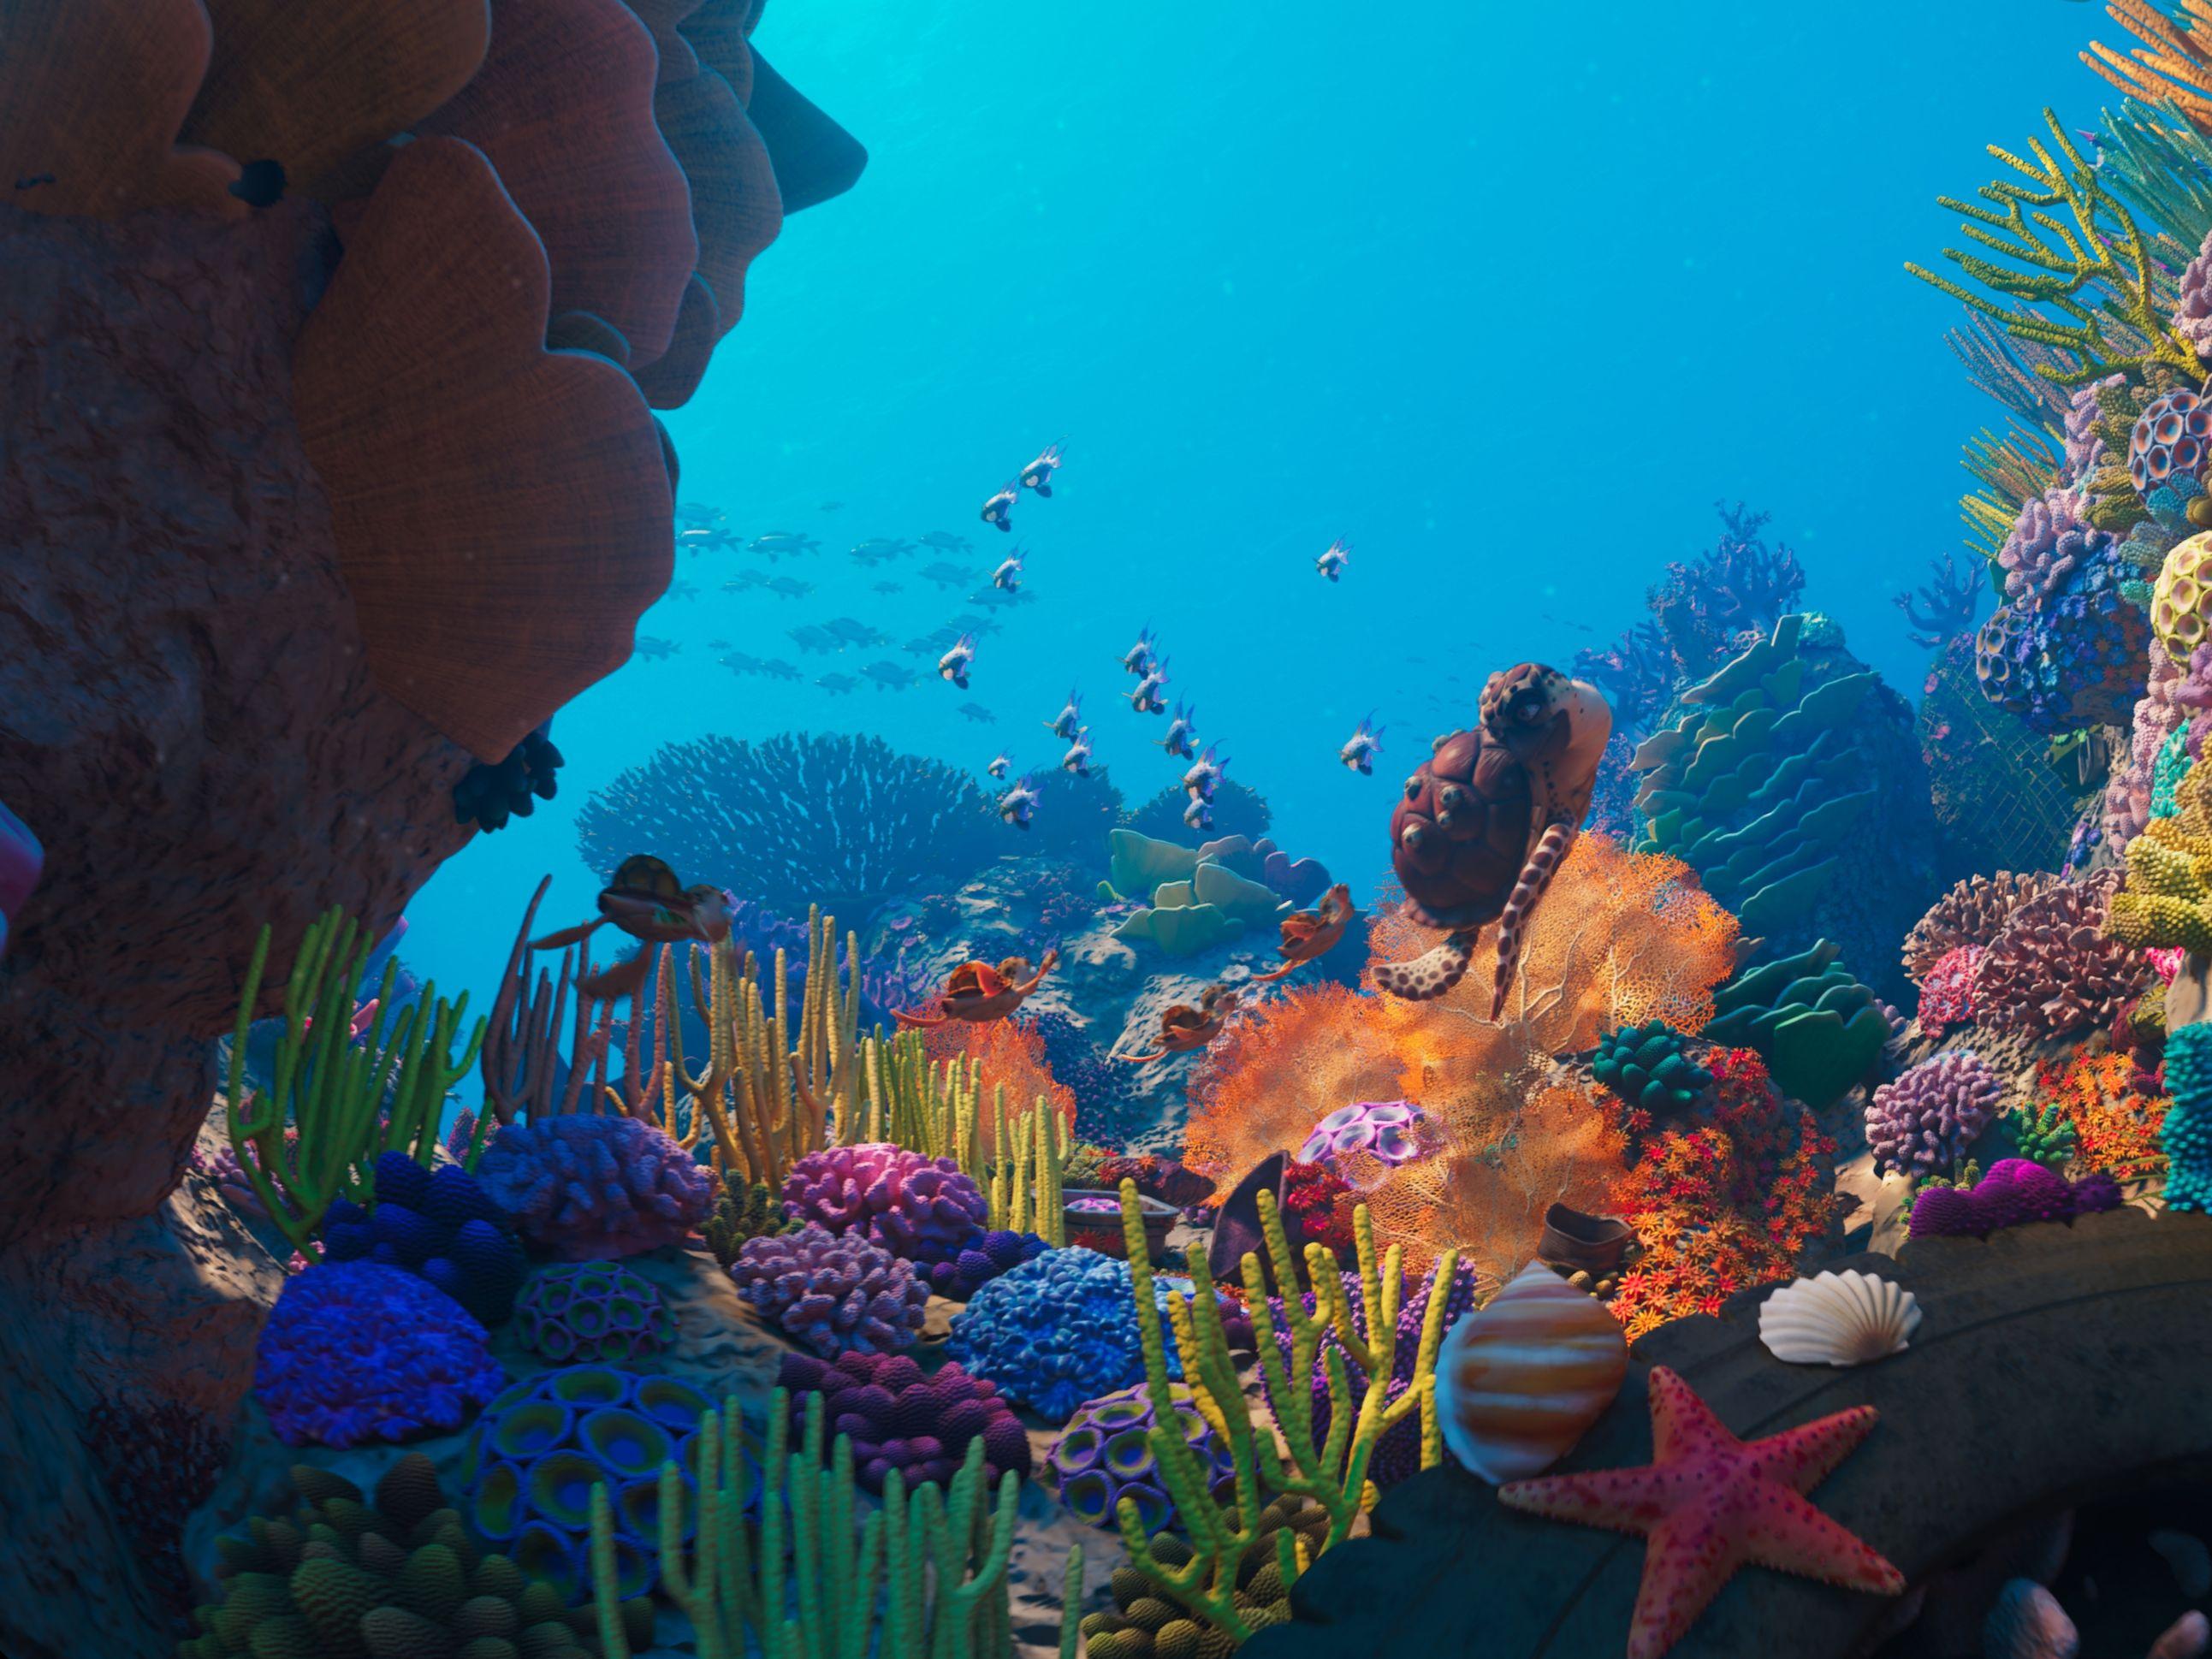 香港太空館天象廳十月一日（星期日）起放映全新立體球幕電影《珊瑚礁冒險隊3D》，帶領觀眾探索海底世界。圖示一個色彩斑斕的珊瑚礁，是眾多海洋生物的家園。（圖片來源：SOFTMACHINE）
